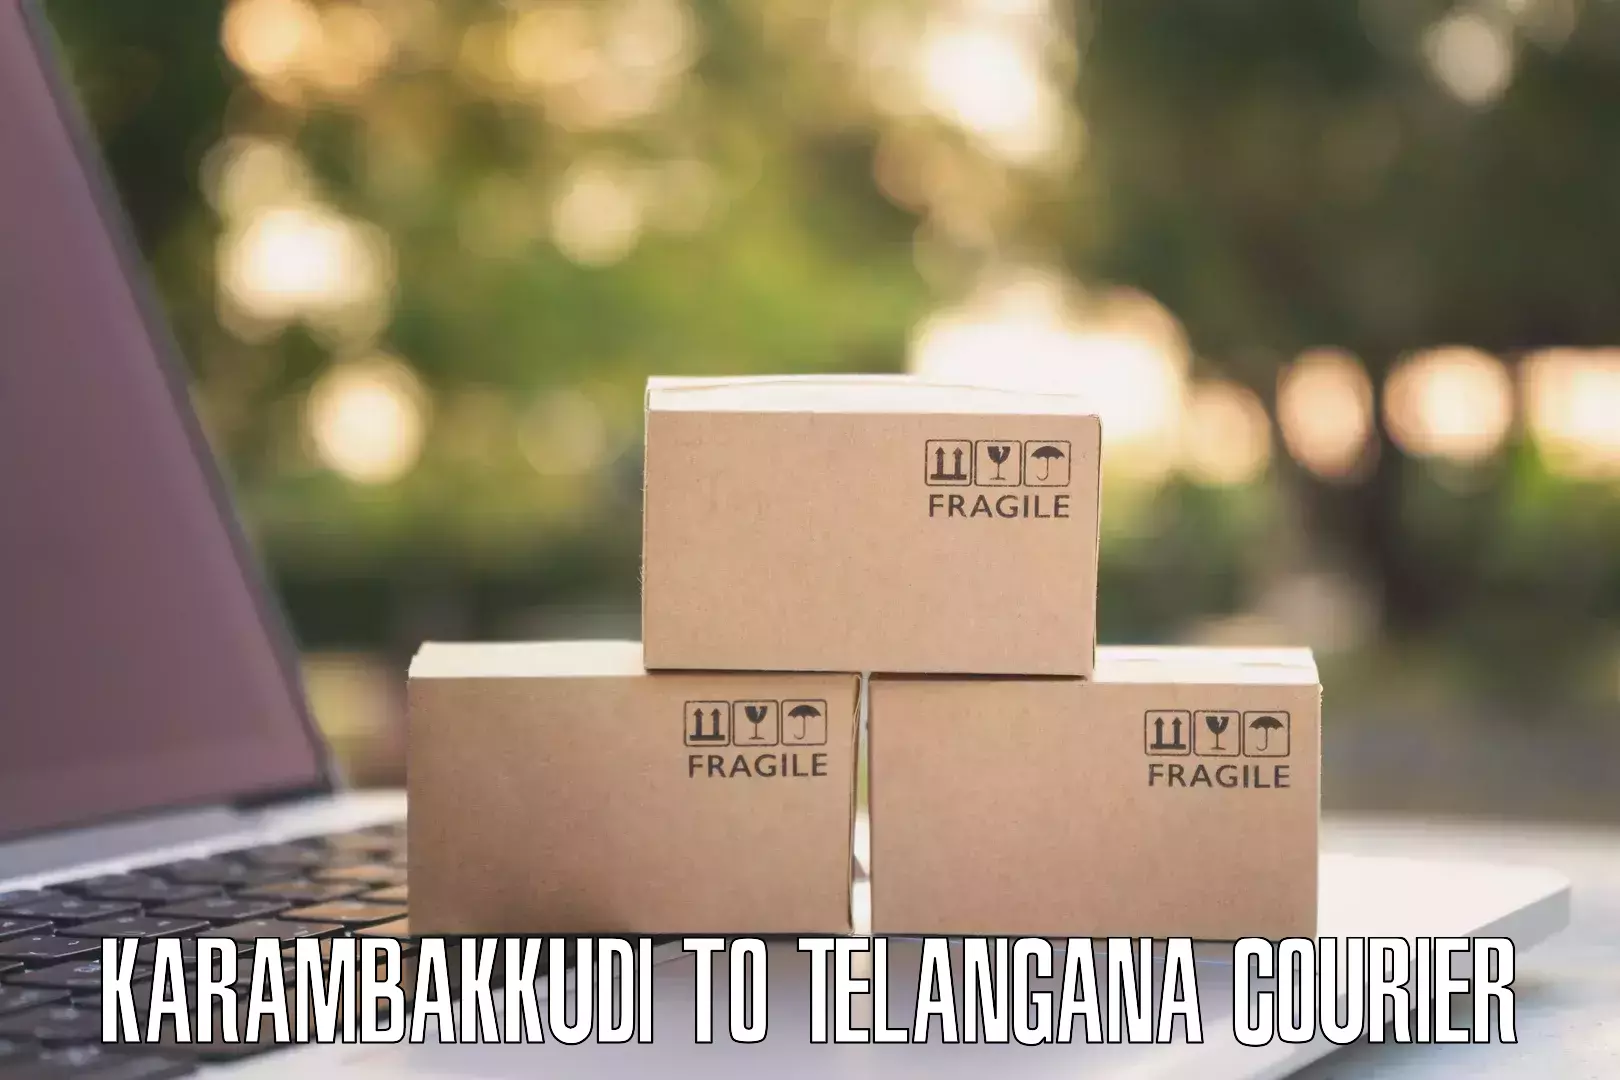 Courier service booking Karambakkudi to Achampet